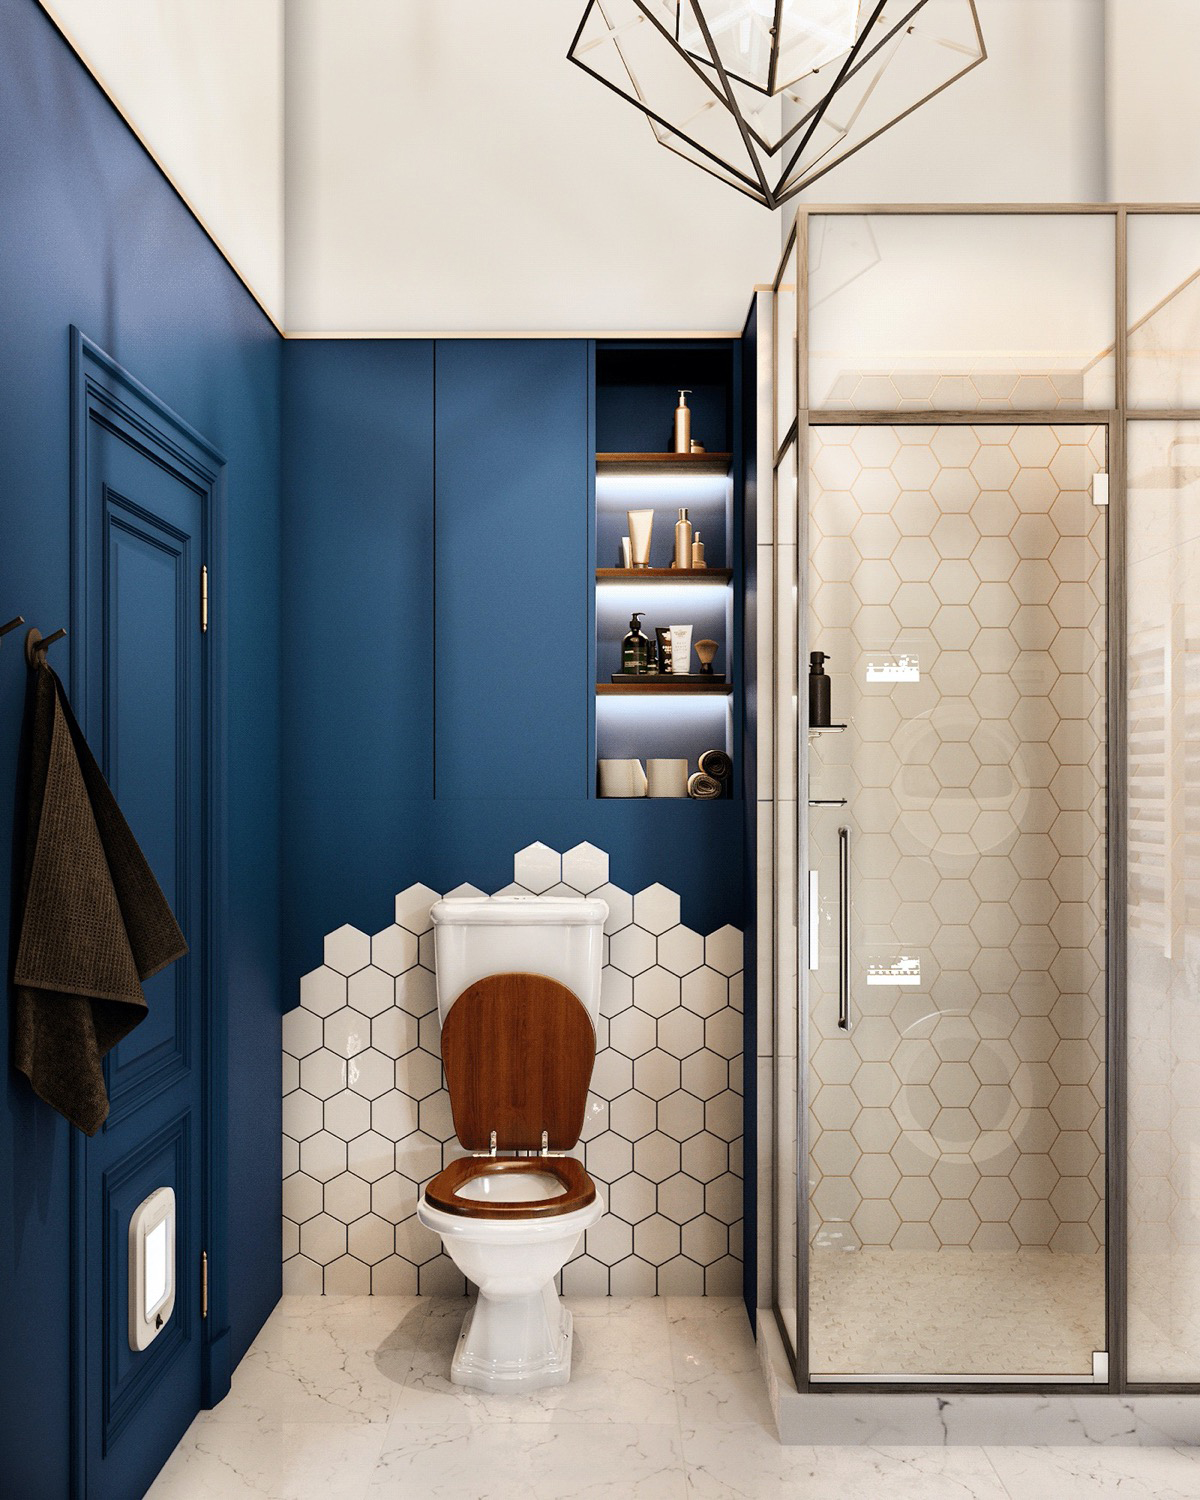 Sơn tường màu xanh kết hợp hoàn hảo với gạch ốp lục giác màu trắng bao quanh khu vực vệ sinh và buồng tắm đứng cực bắt mắt.